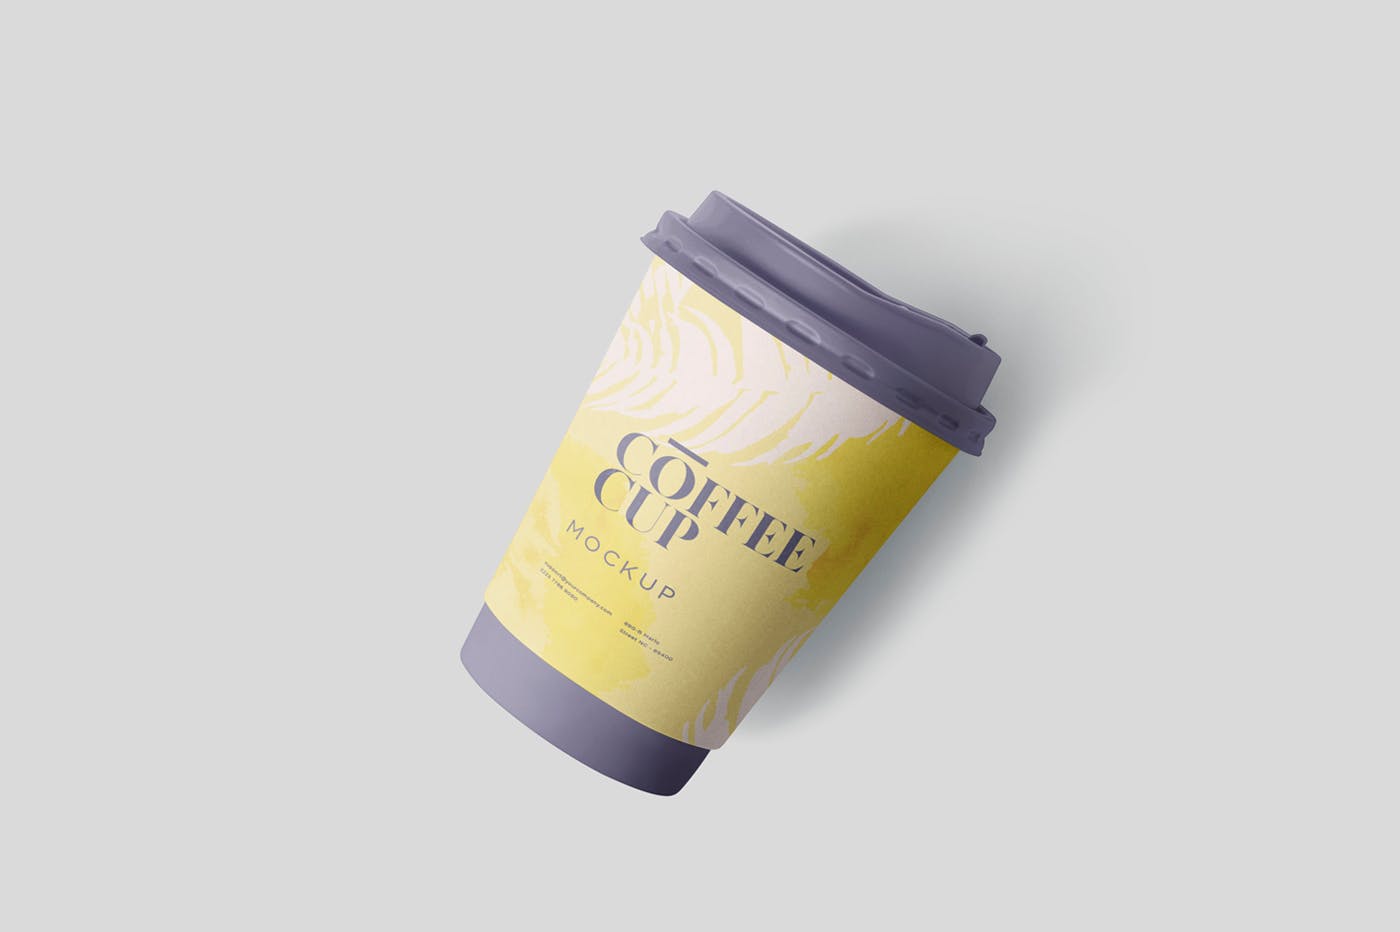 咖啡一次性纸杯设计效果图第一素材精选 Coffee Cup Mockup插图(3)